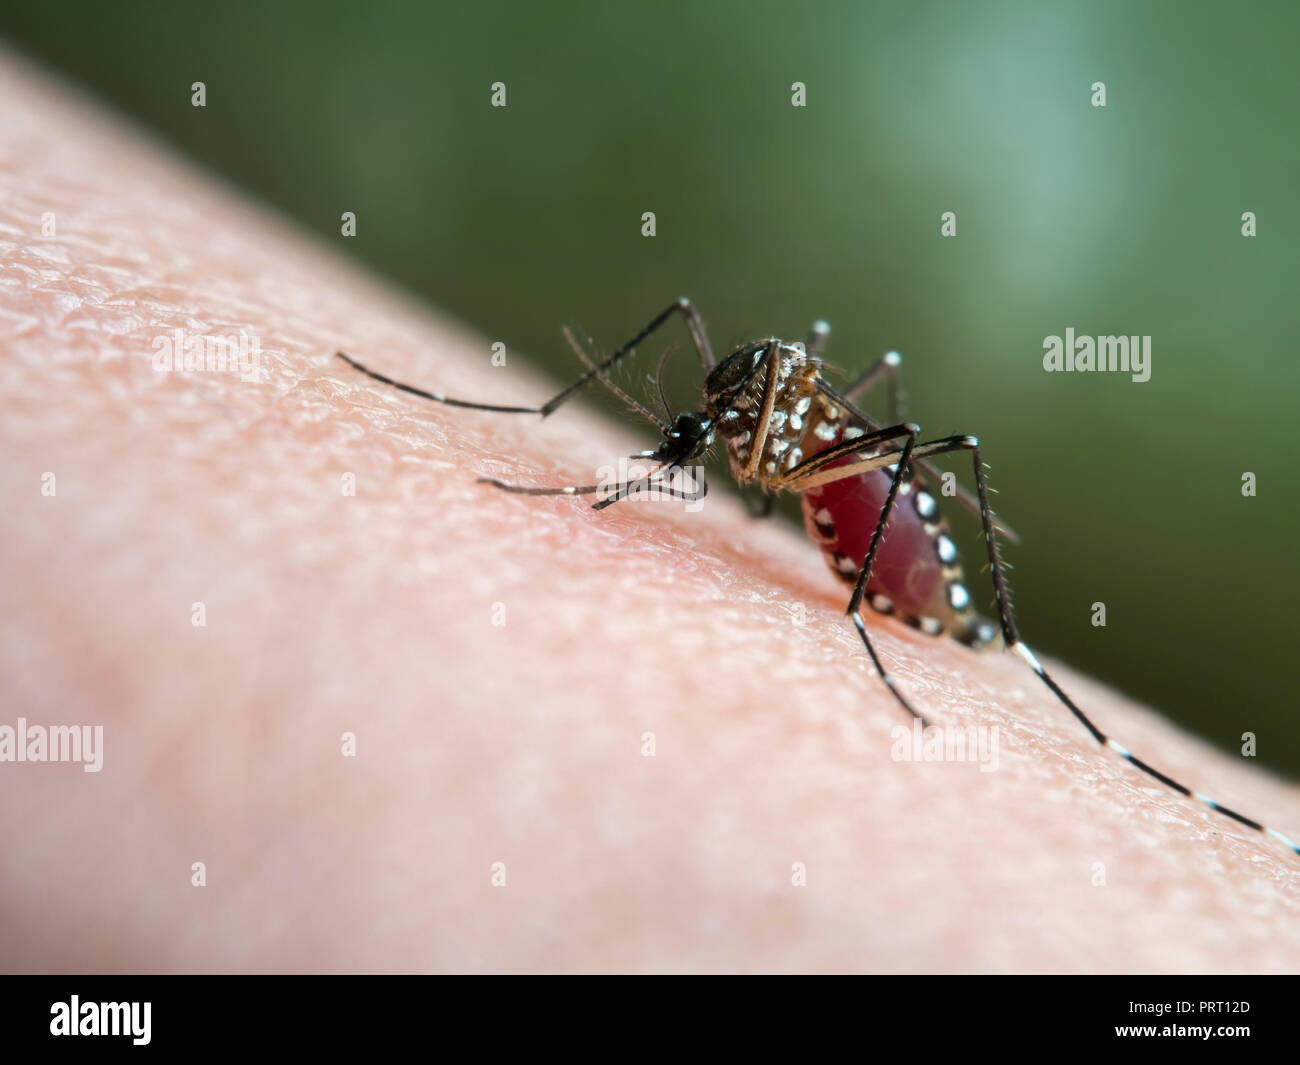 Vettore Aedes aegypti (mosquito da dengue) succhiare il sangue sulla pelle umana. Vettore della febbre dengue, febbre gialla zika virus chikungunya e. Foto Stock